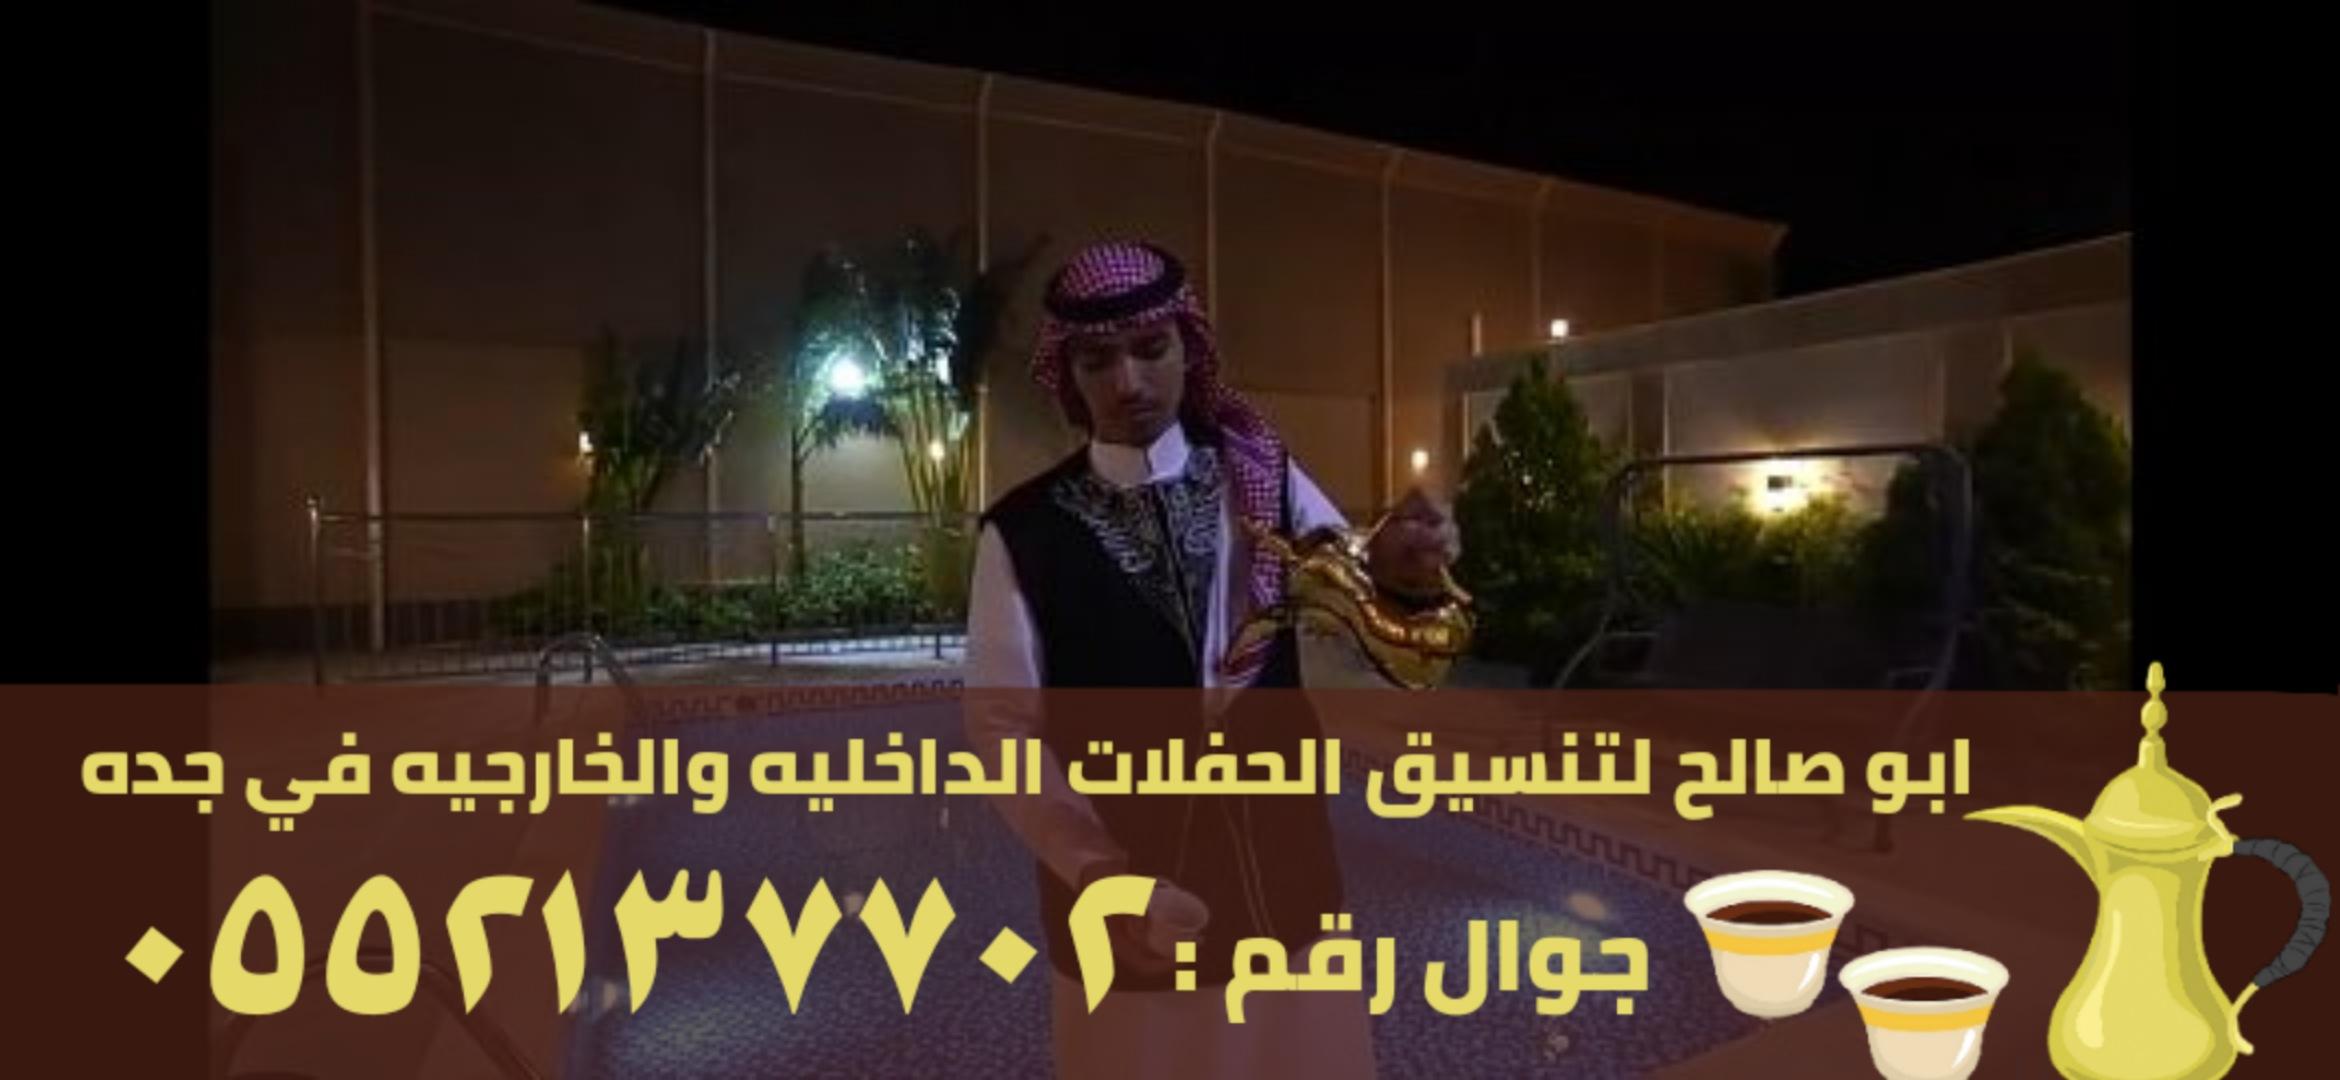 قهوجيين رجال ونساء في جدة, 0552137702 781844159